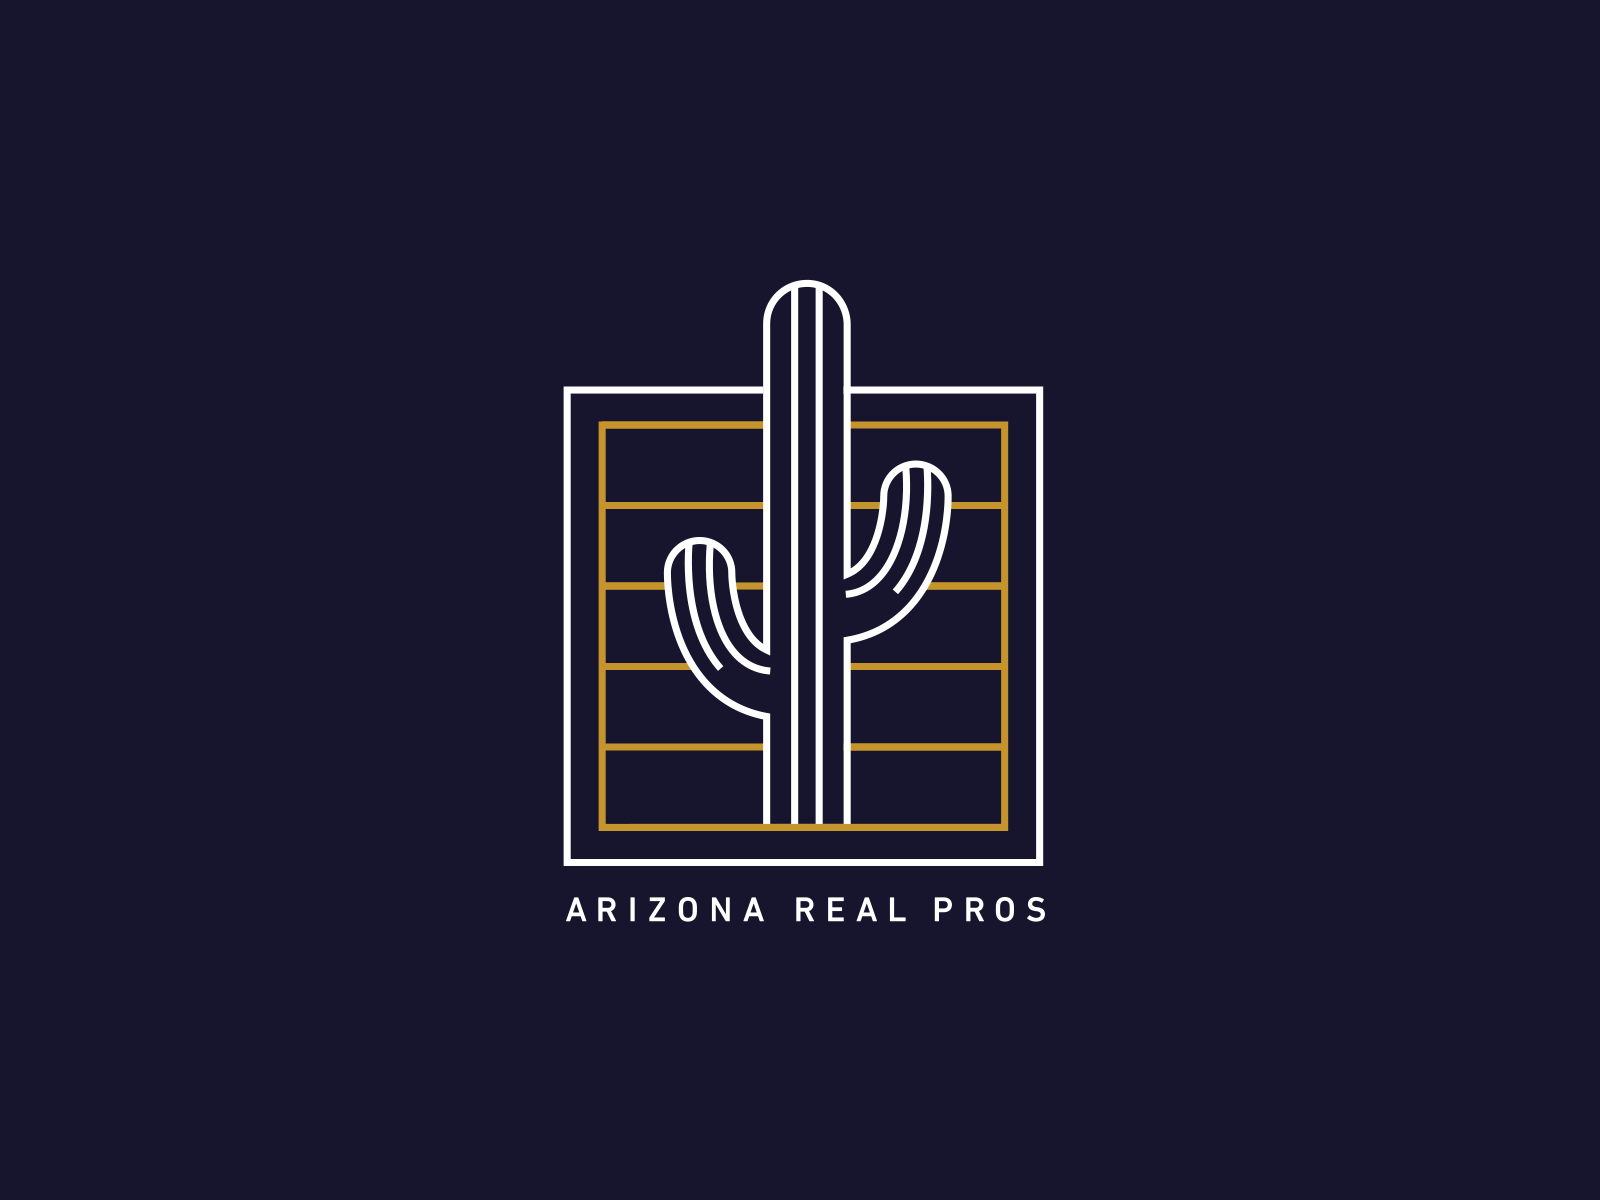 Arizona Real Pros. - Logo Design cactus desert design graphic icon illustration logo monoline succulent vector